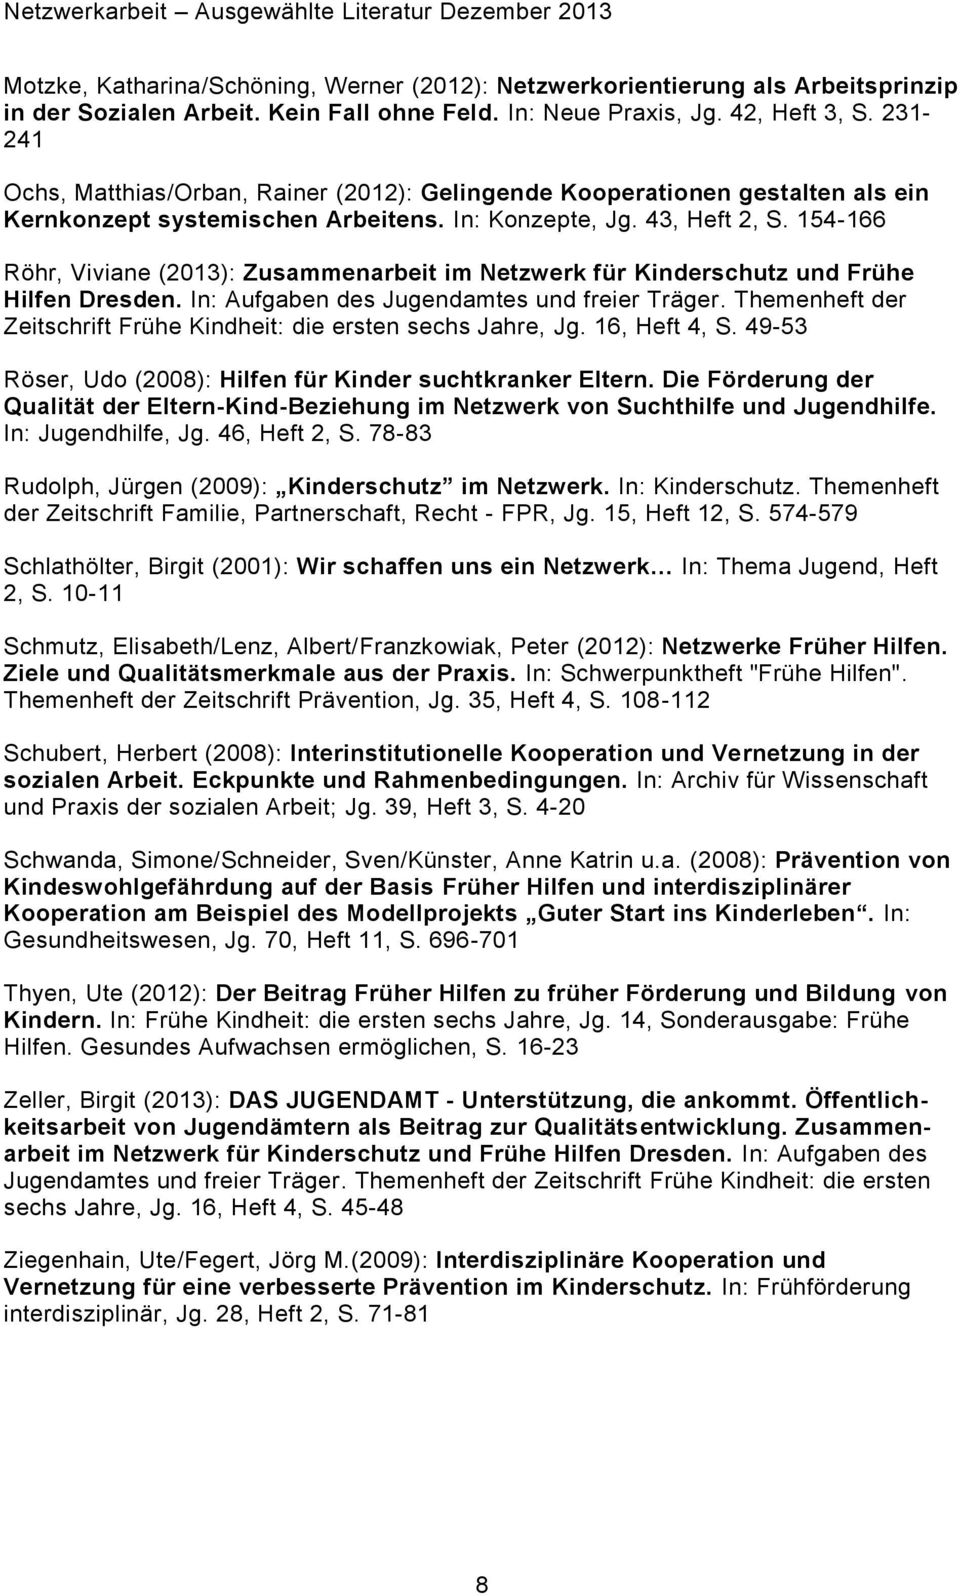 154-166 Röhr, Viviane (2013): Zusammenarbeit im Netzwerk für Kinderschutz und Frühe Hilfen Dresden. In: Aufgaben des Jugendamtes und freier Träger.